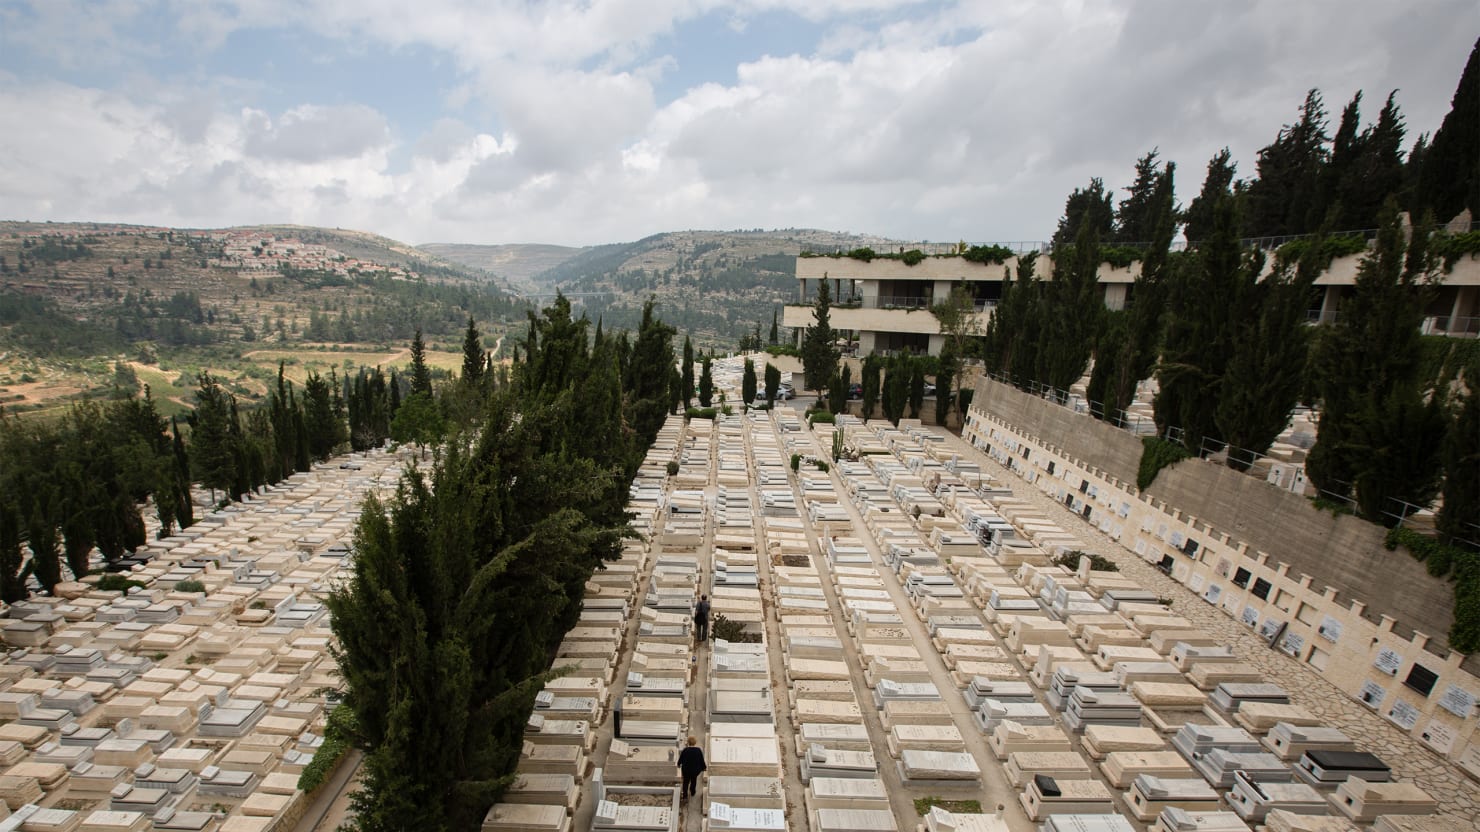 Еврейское кладбище в иерусалиме фото